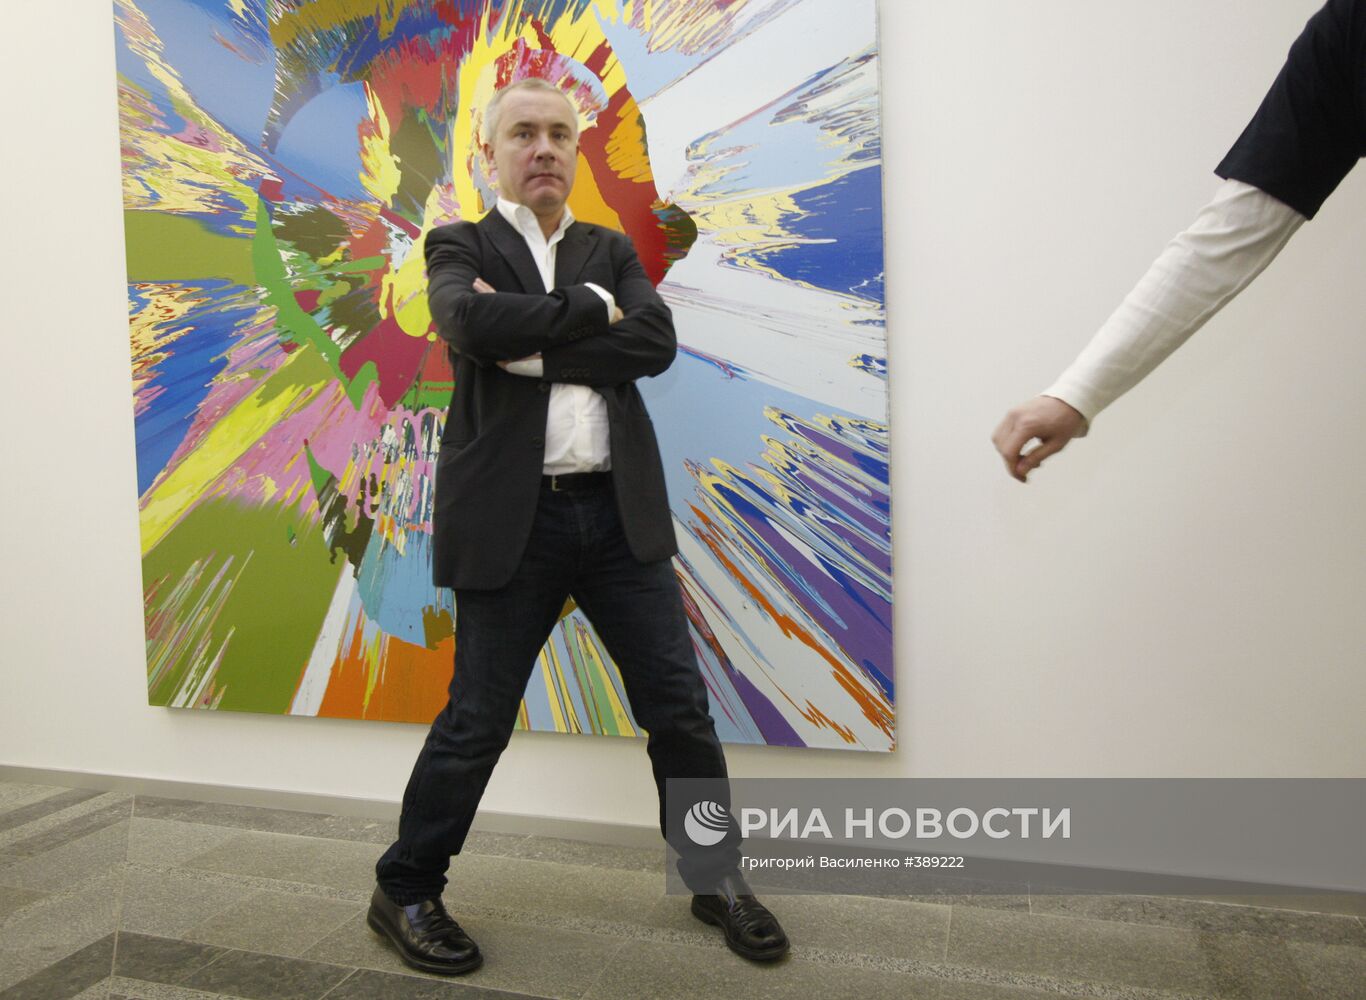 Выставка Дэмиена Херста "Реквием" открылась в Киеве